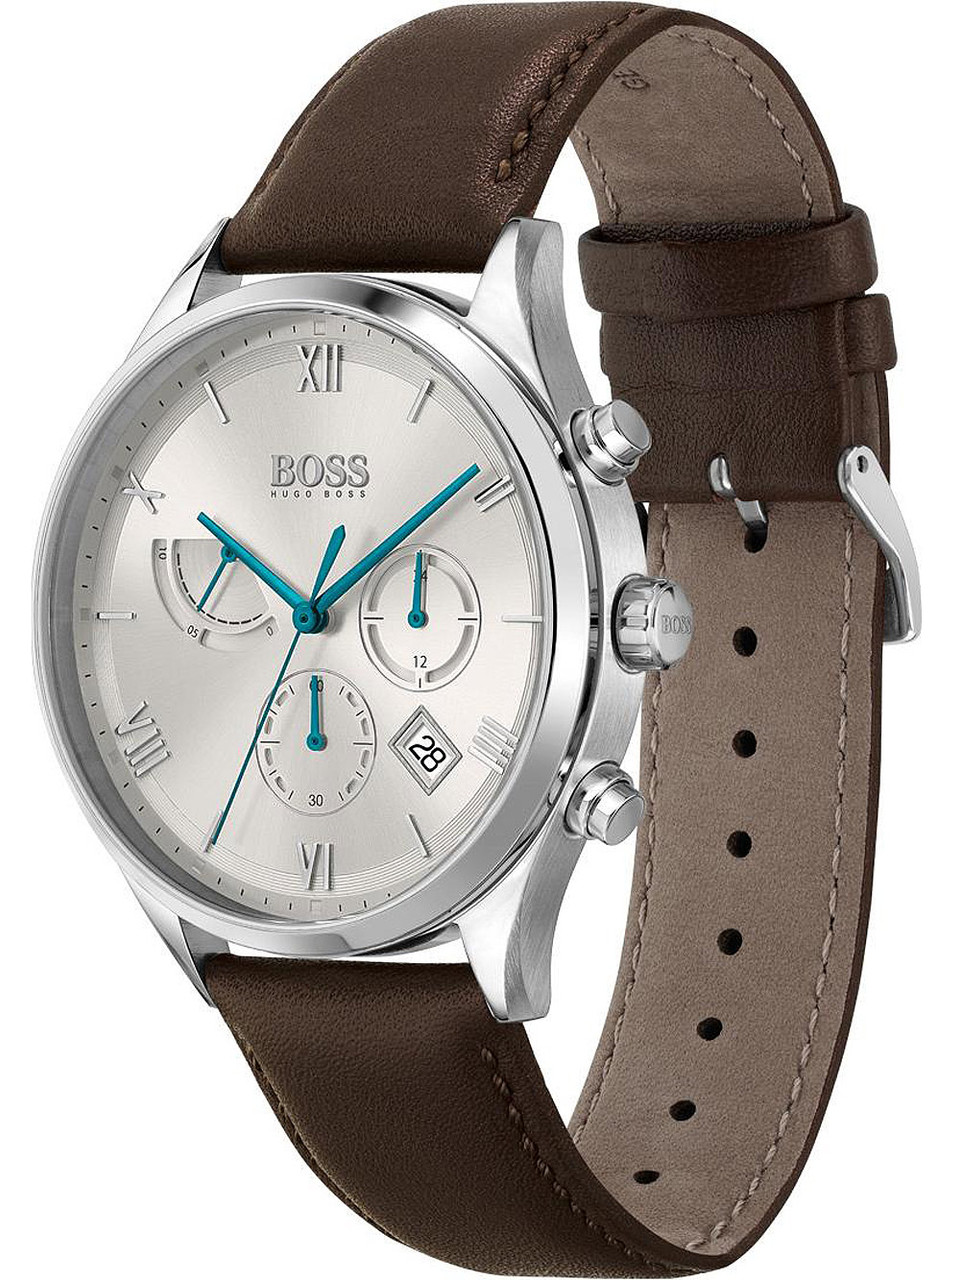 Hugo Boss 1513889 owlica | 44mm chrono Gallant - Watches Genuine 5ATM